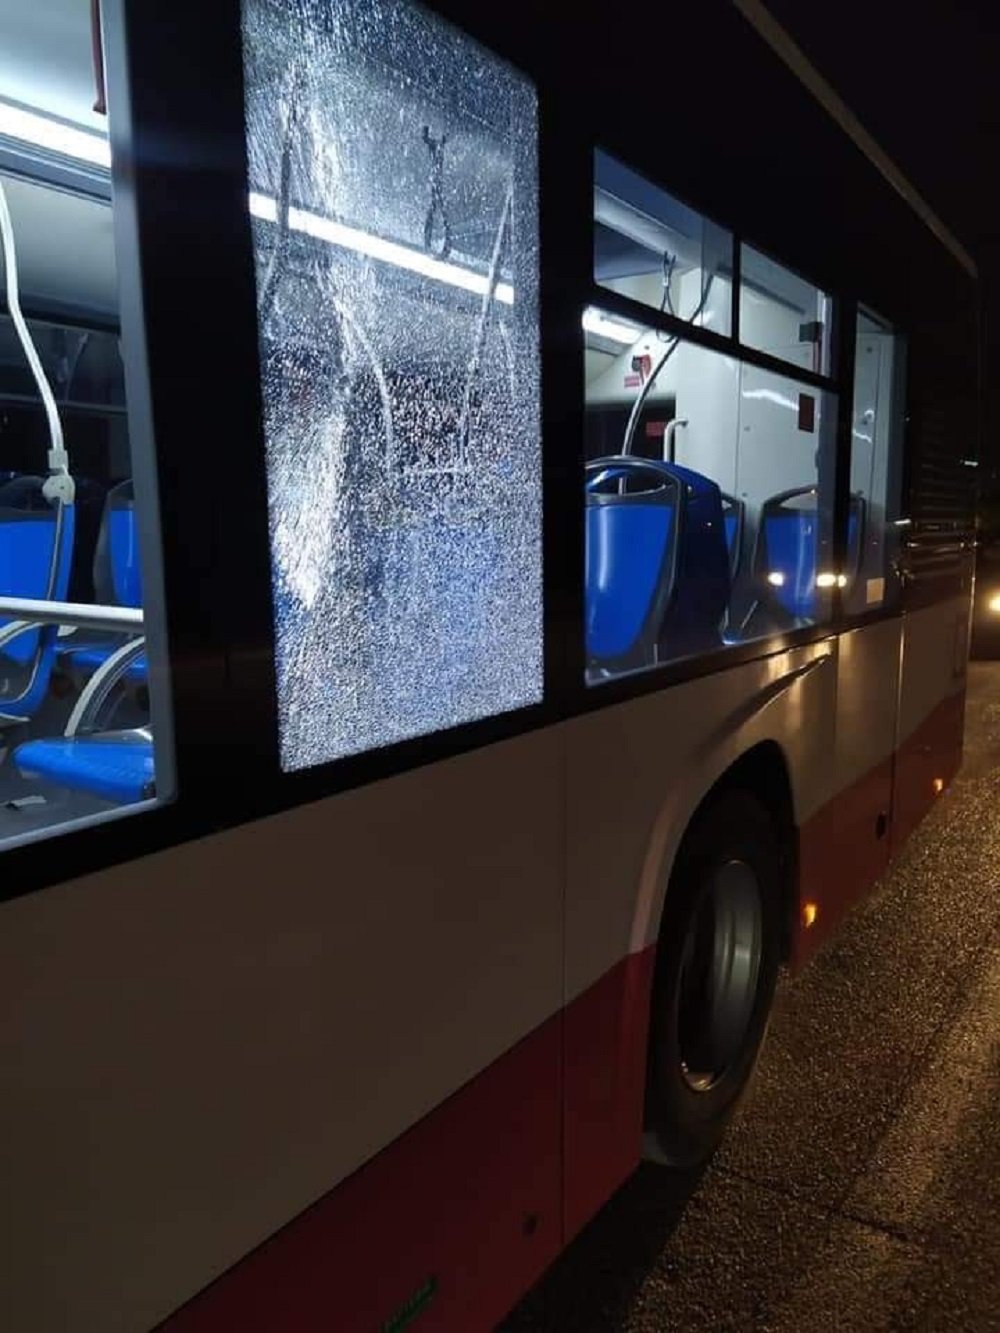 Vandalizzato un autobus nuovo di zecca ad Acerra, finestrini in frantumi